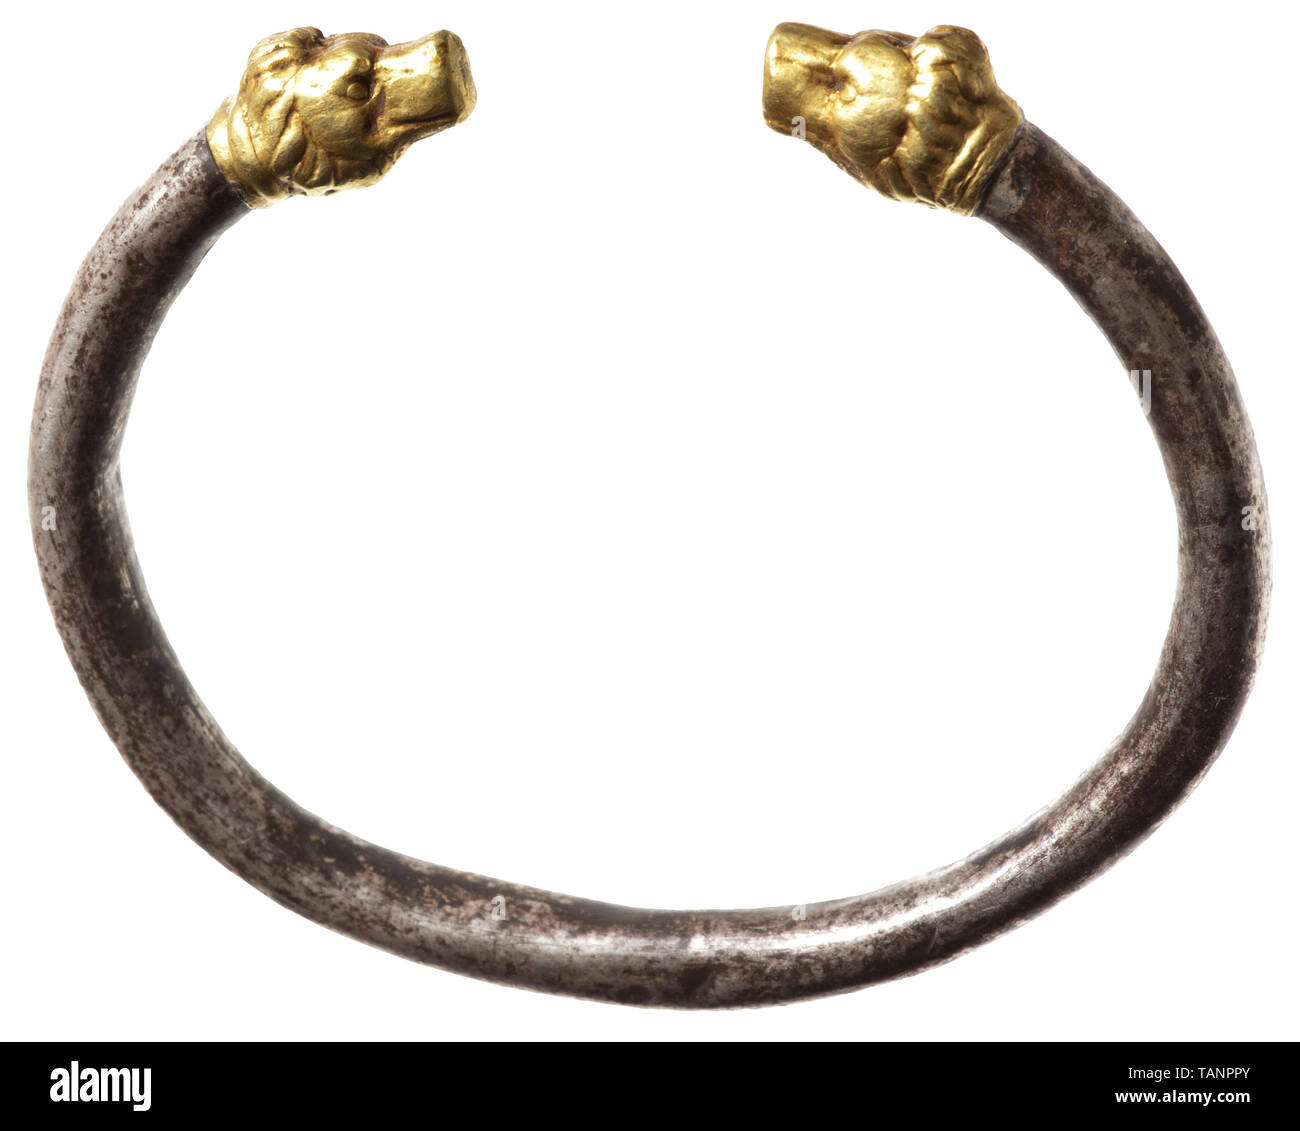 Une tête de lion bracelet hellénistique, 3e siècle avant J.-C., bangle bracelet de section circulaire, fait de tôle d'épaisseur de l'argent. Soudé à l'extrémités sont des têtes de lion d'or de robuste tôle emboutie. Les pièces en métal creux probablement stabilisé en interne avec du matériel de remplissage. Poids 20,59 g. Diamètre de l'argent bangle 5 mm. Largeur maximale du bracelet 6,8 cm. Provenance : Collection privée autrichienne, achetés auprès d'un marchand d'art à Vienne dans les années 1980. monde antique, l'antiquité grecque, Hellas, historique, historique monde antique, Additional-Rights Clearance-Info-Not-Available- Banque D'Images